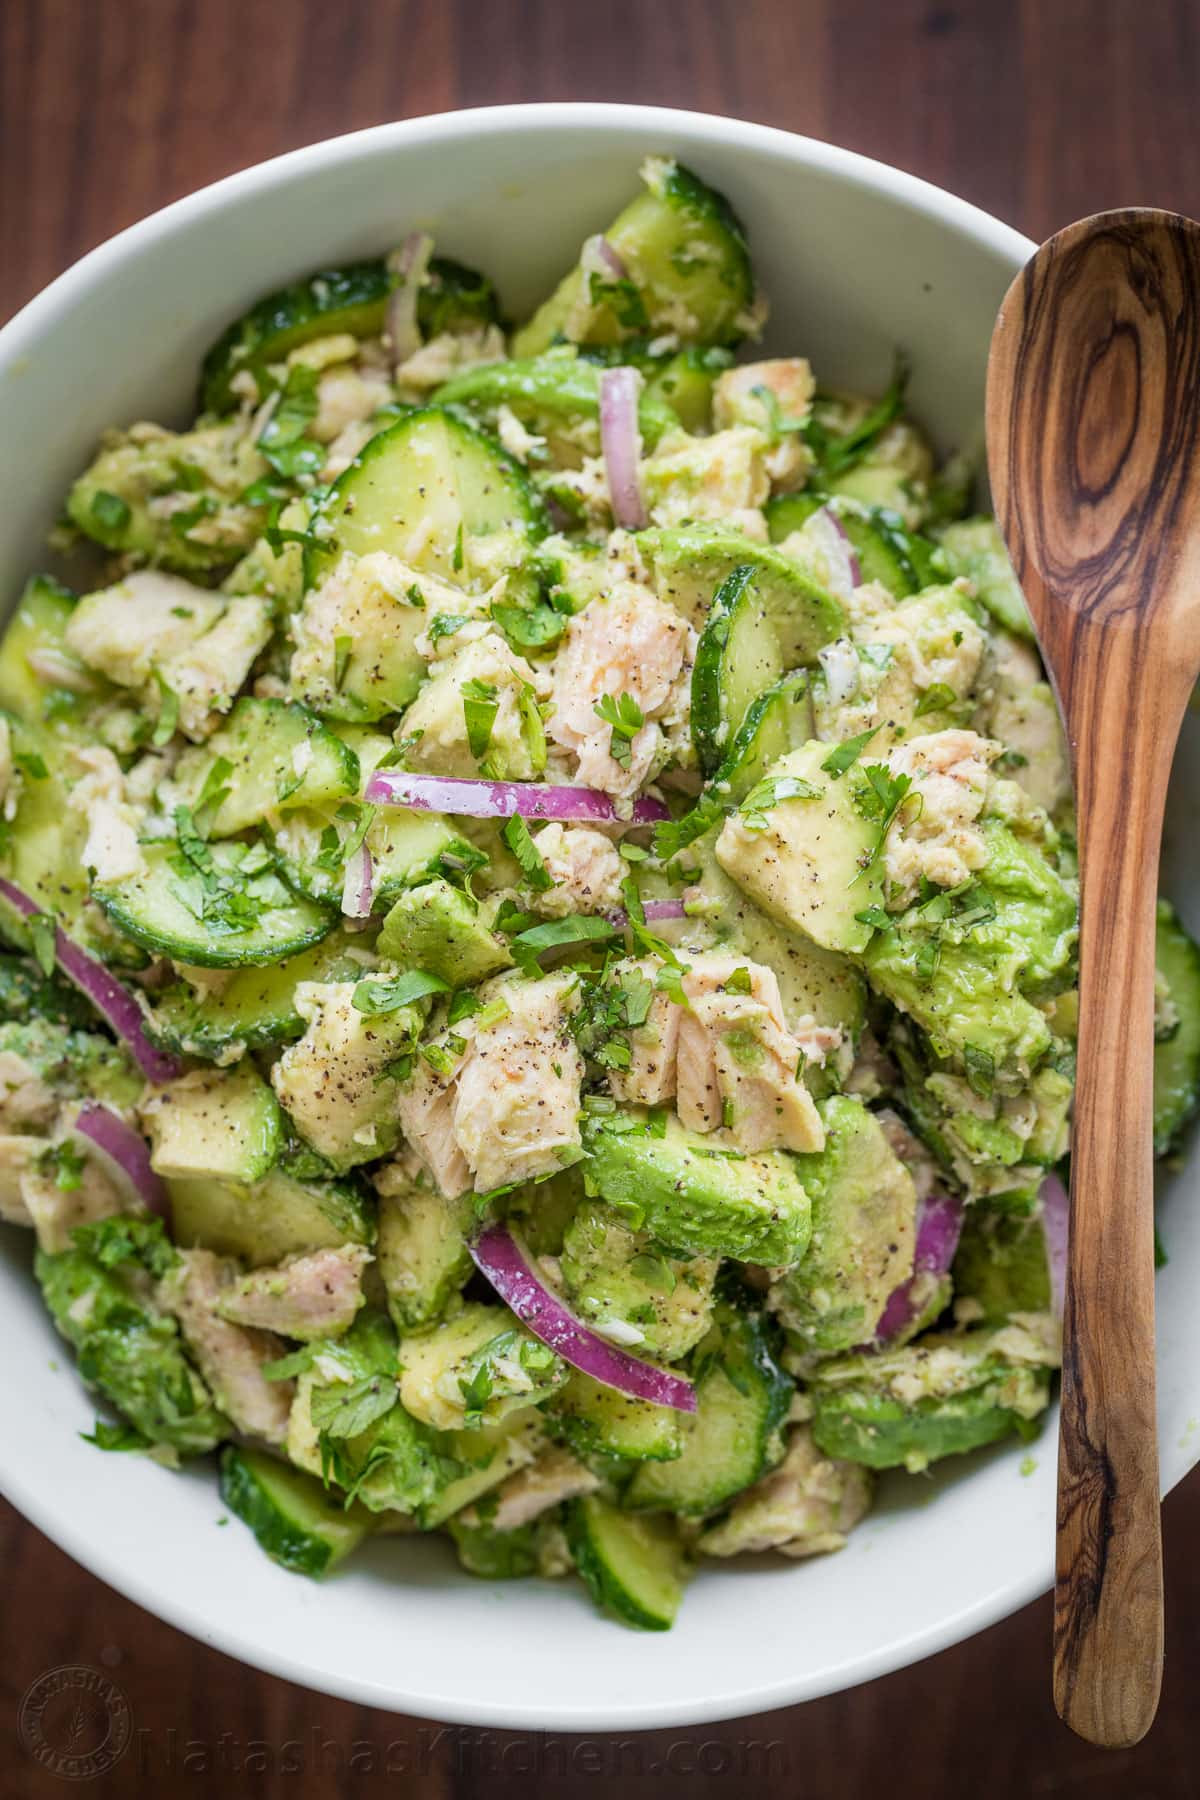 Healthy Recipes With Avocado
 Avocado Tuna Salad Recipe VIDEO NatashasKitchen